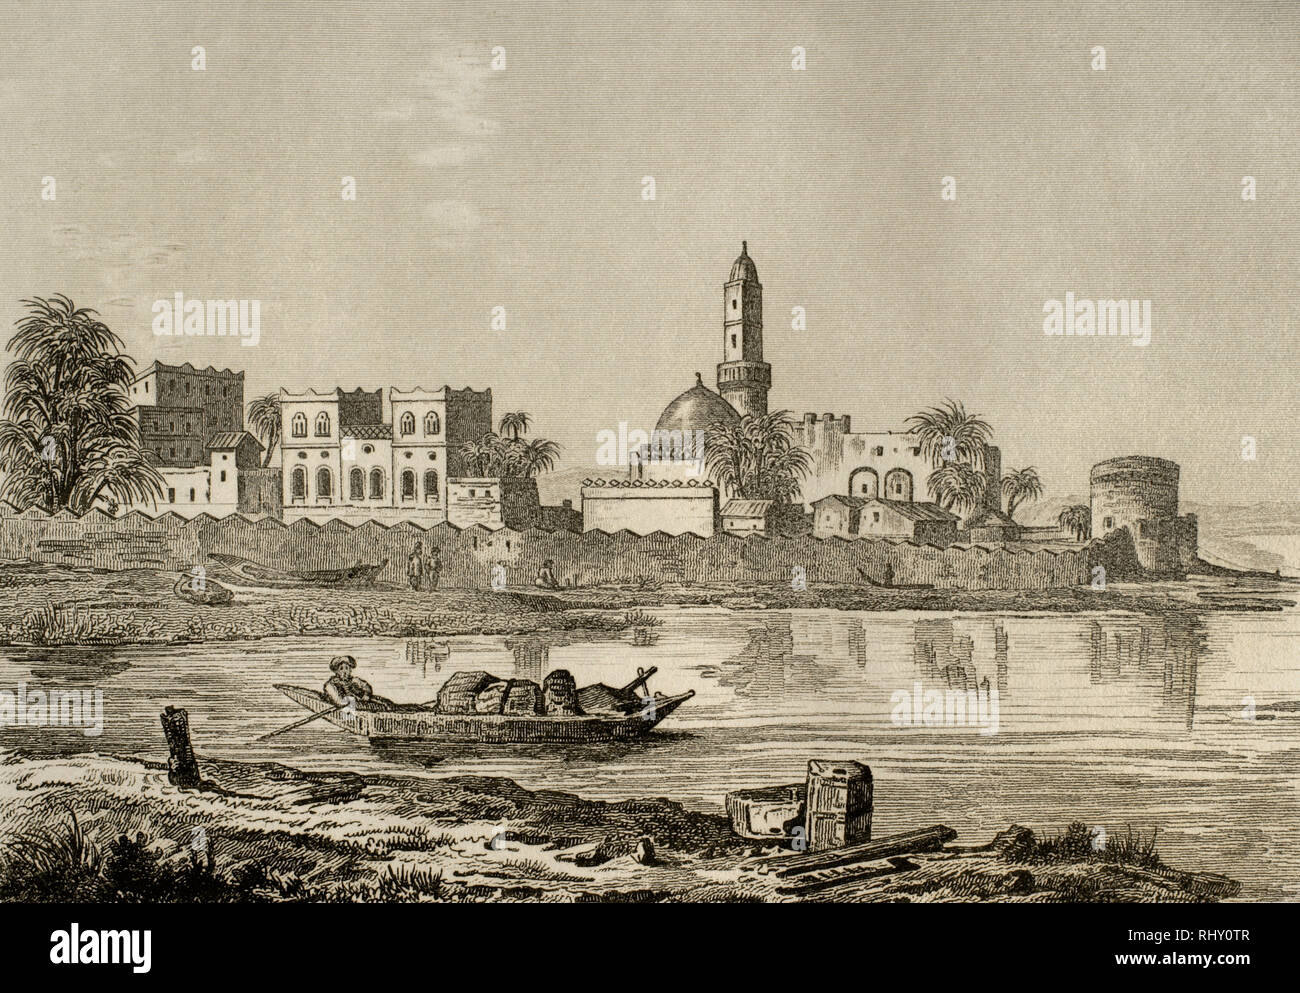 Jemen. Mokka. Blick auf die Stadt an den Ufern des Roten Meeres. Kupferstich von Fleury. Panorama Universal. Geschichte von Arabien, 1851. Stockfoto